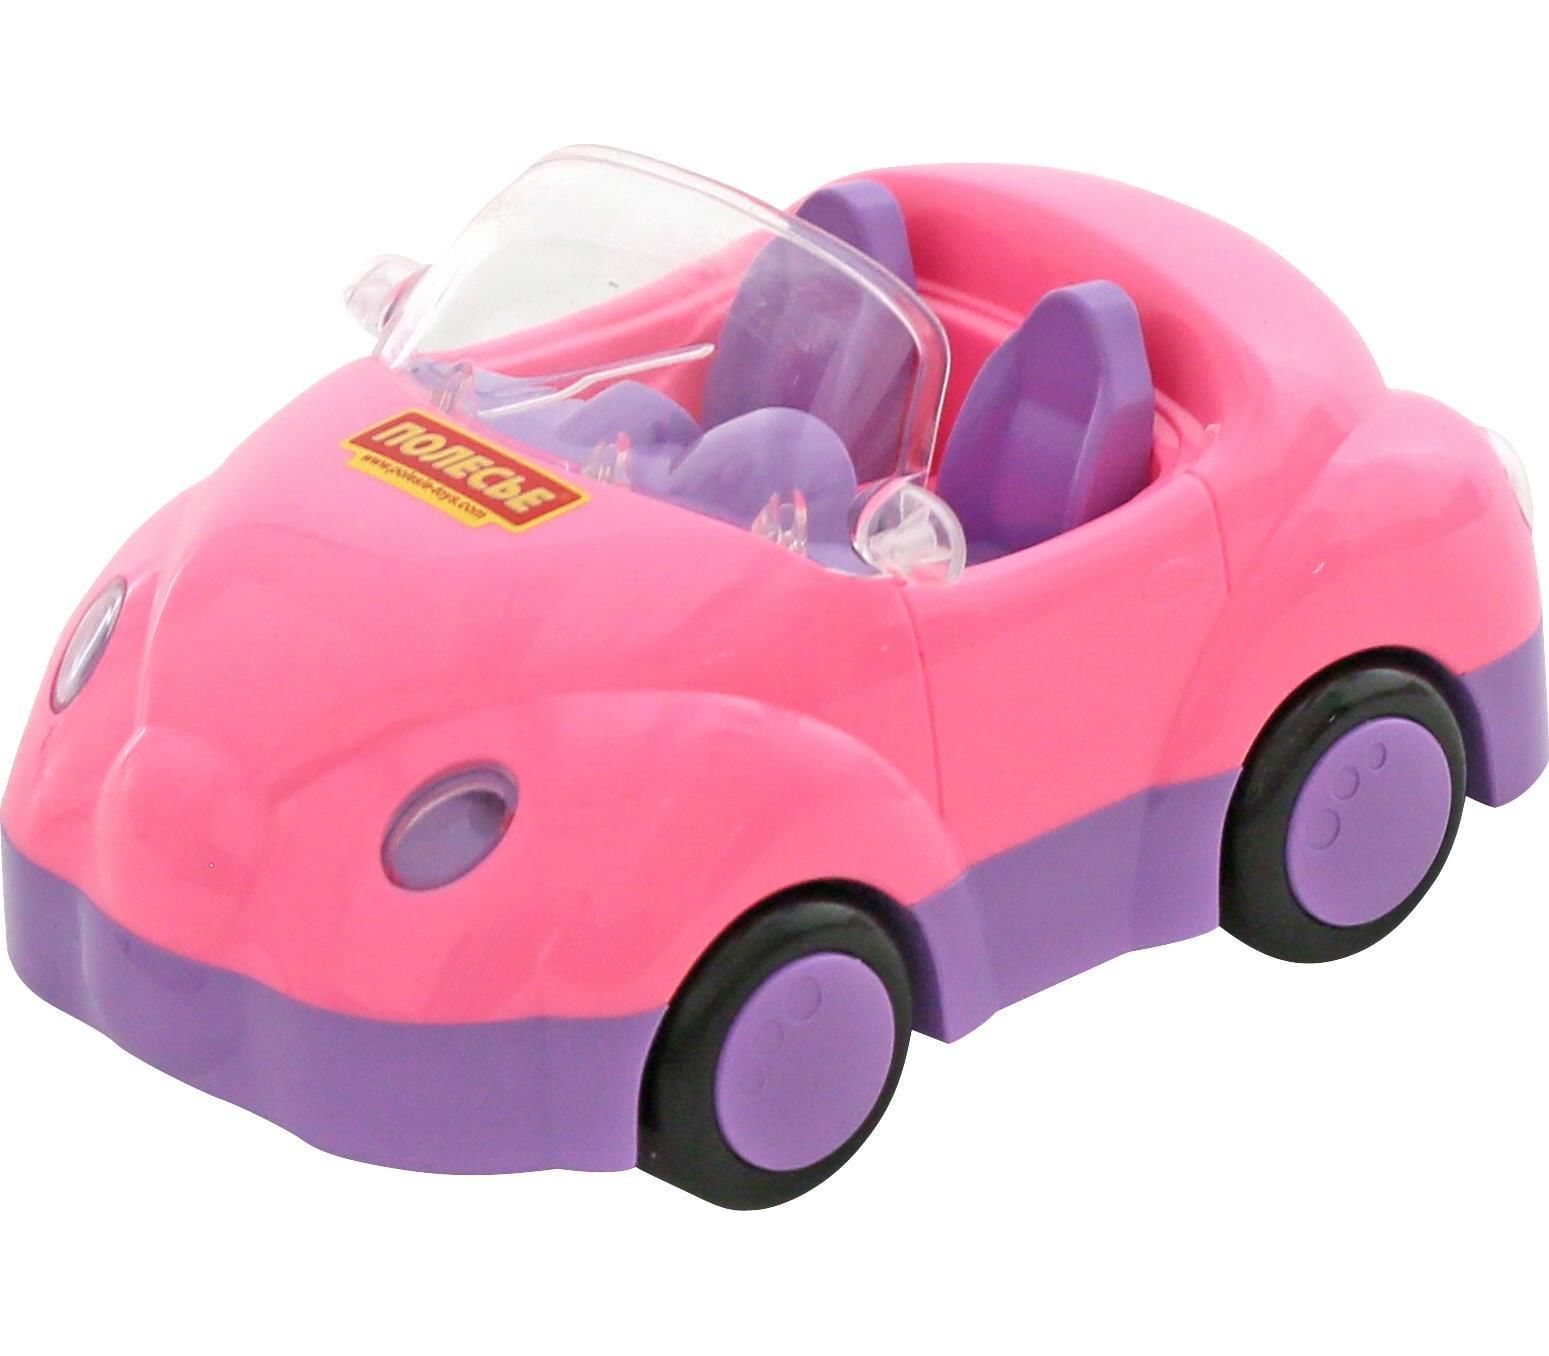 Машинка для детей 8 лет. Машина Полесье для девочек улыбка 4816. Машинка Полесье розовая. Детская машинка розовая. Розовая машинка для девочки.